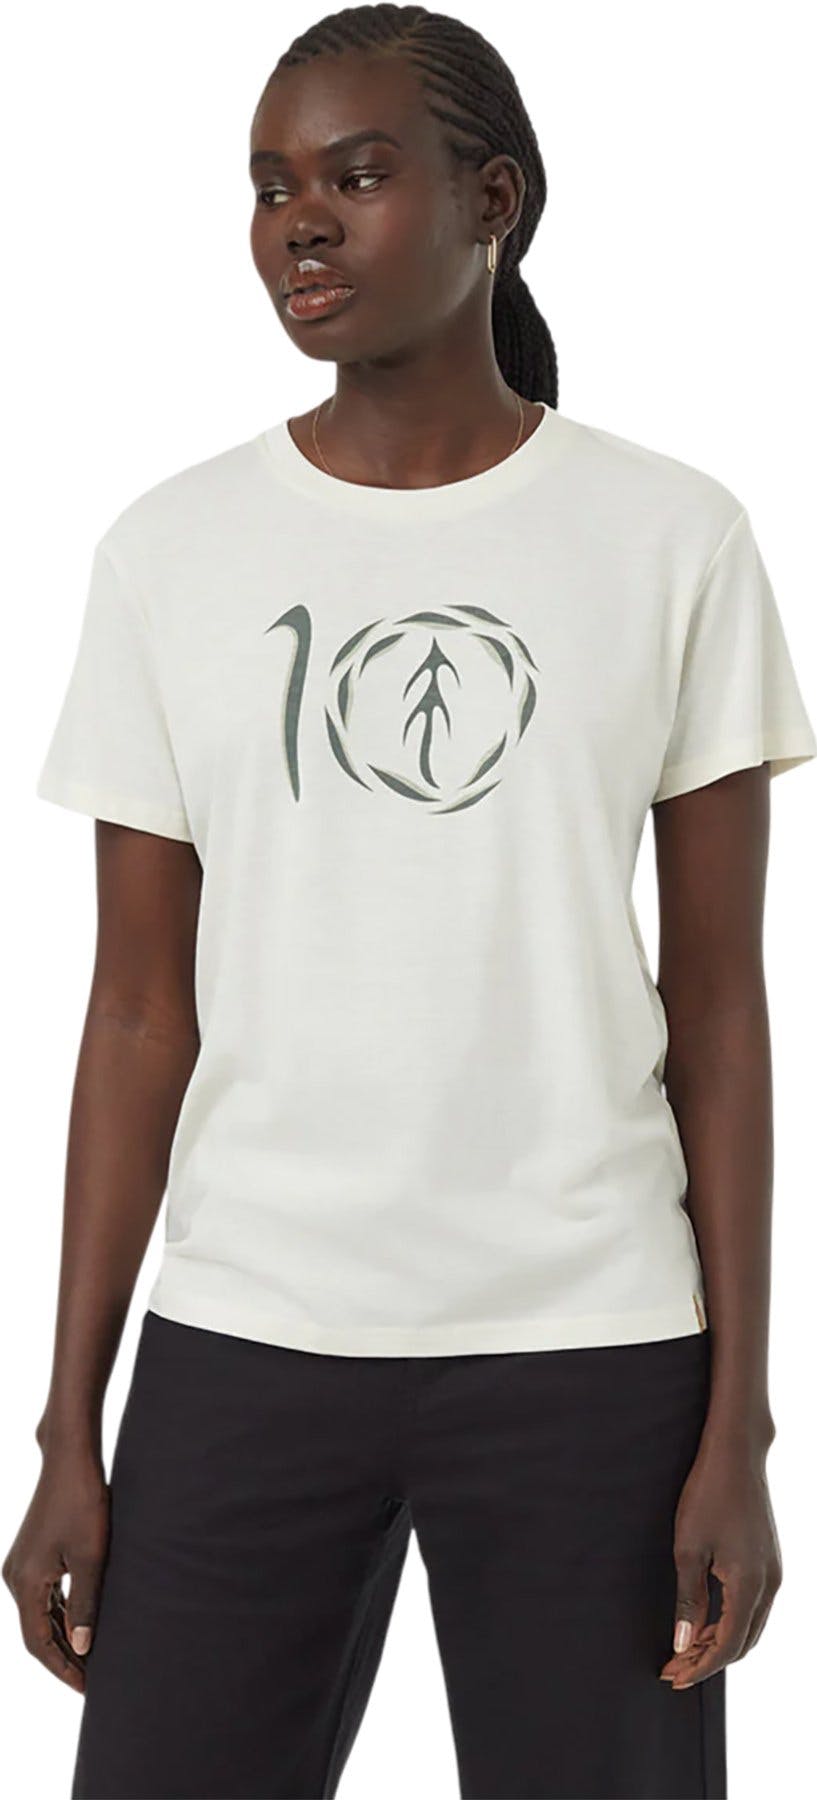 Image de produit pour T-shirt Artist Series Leaf Ten - Femme